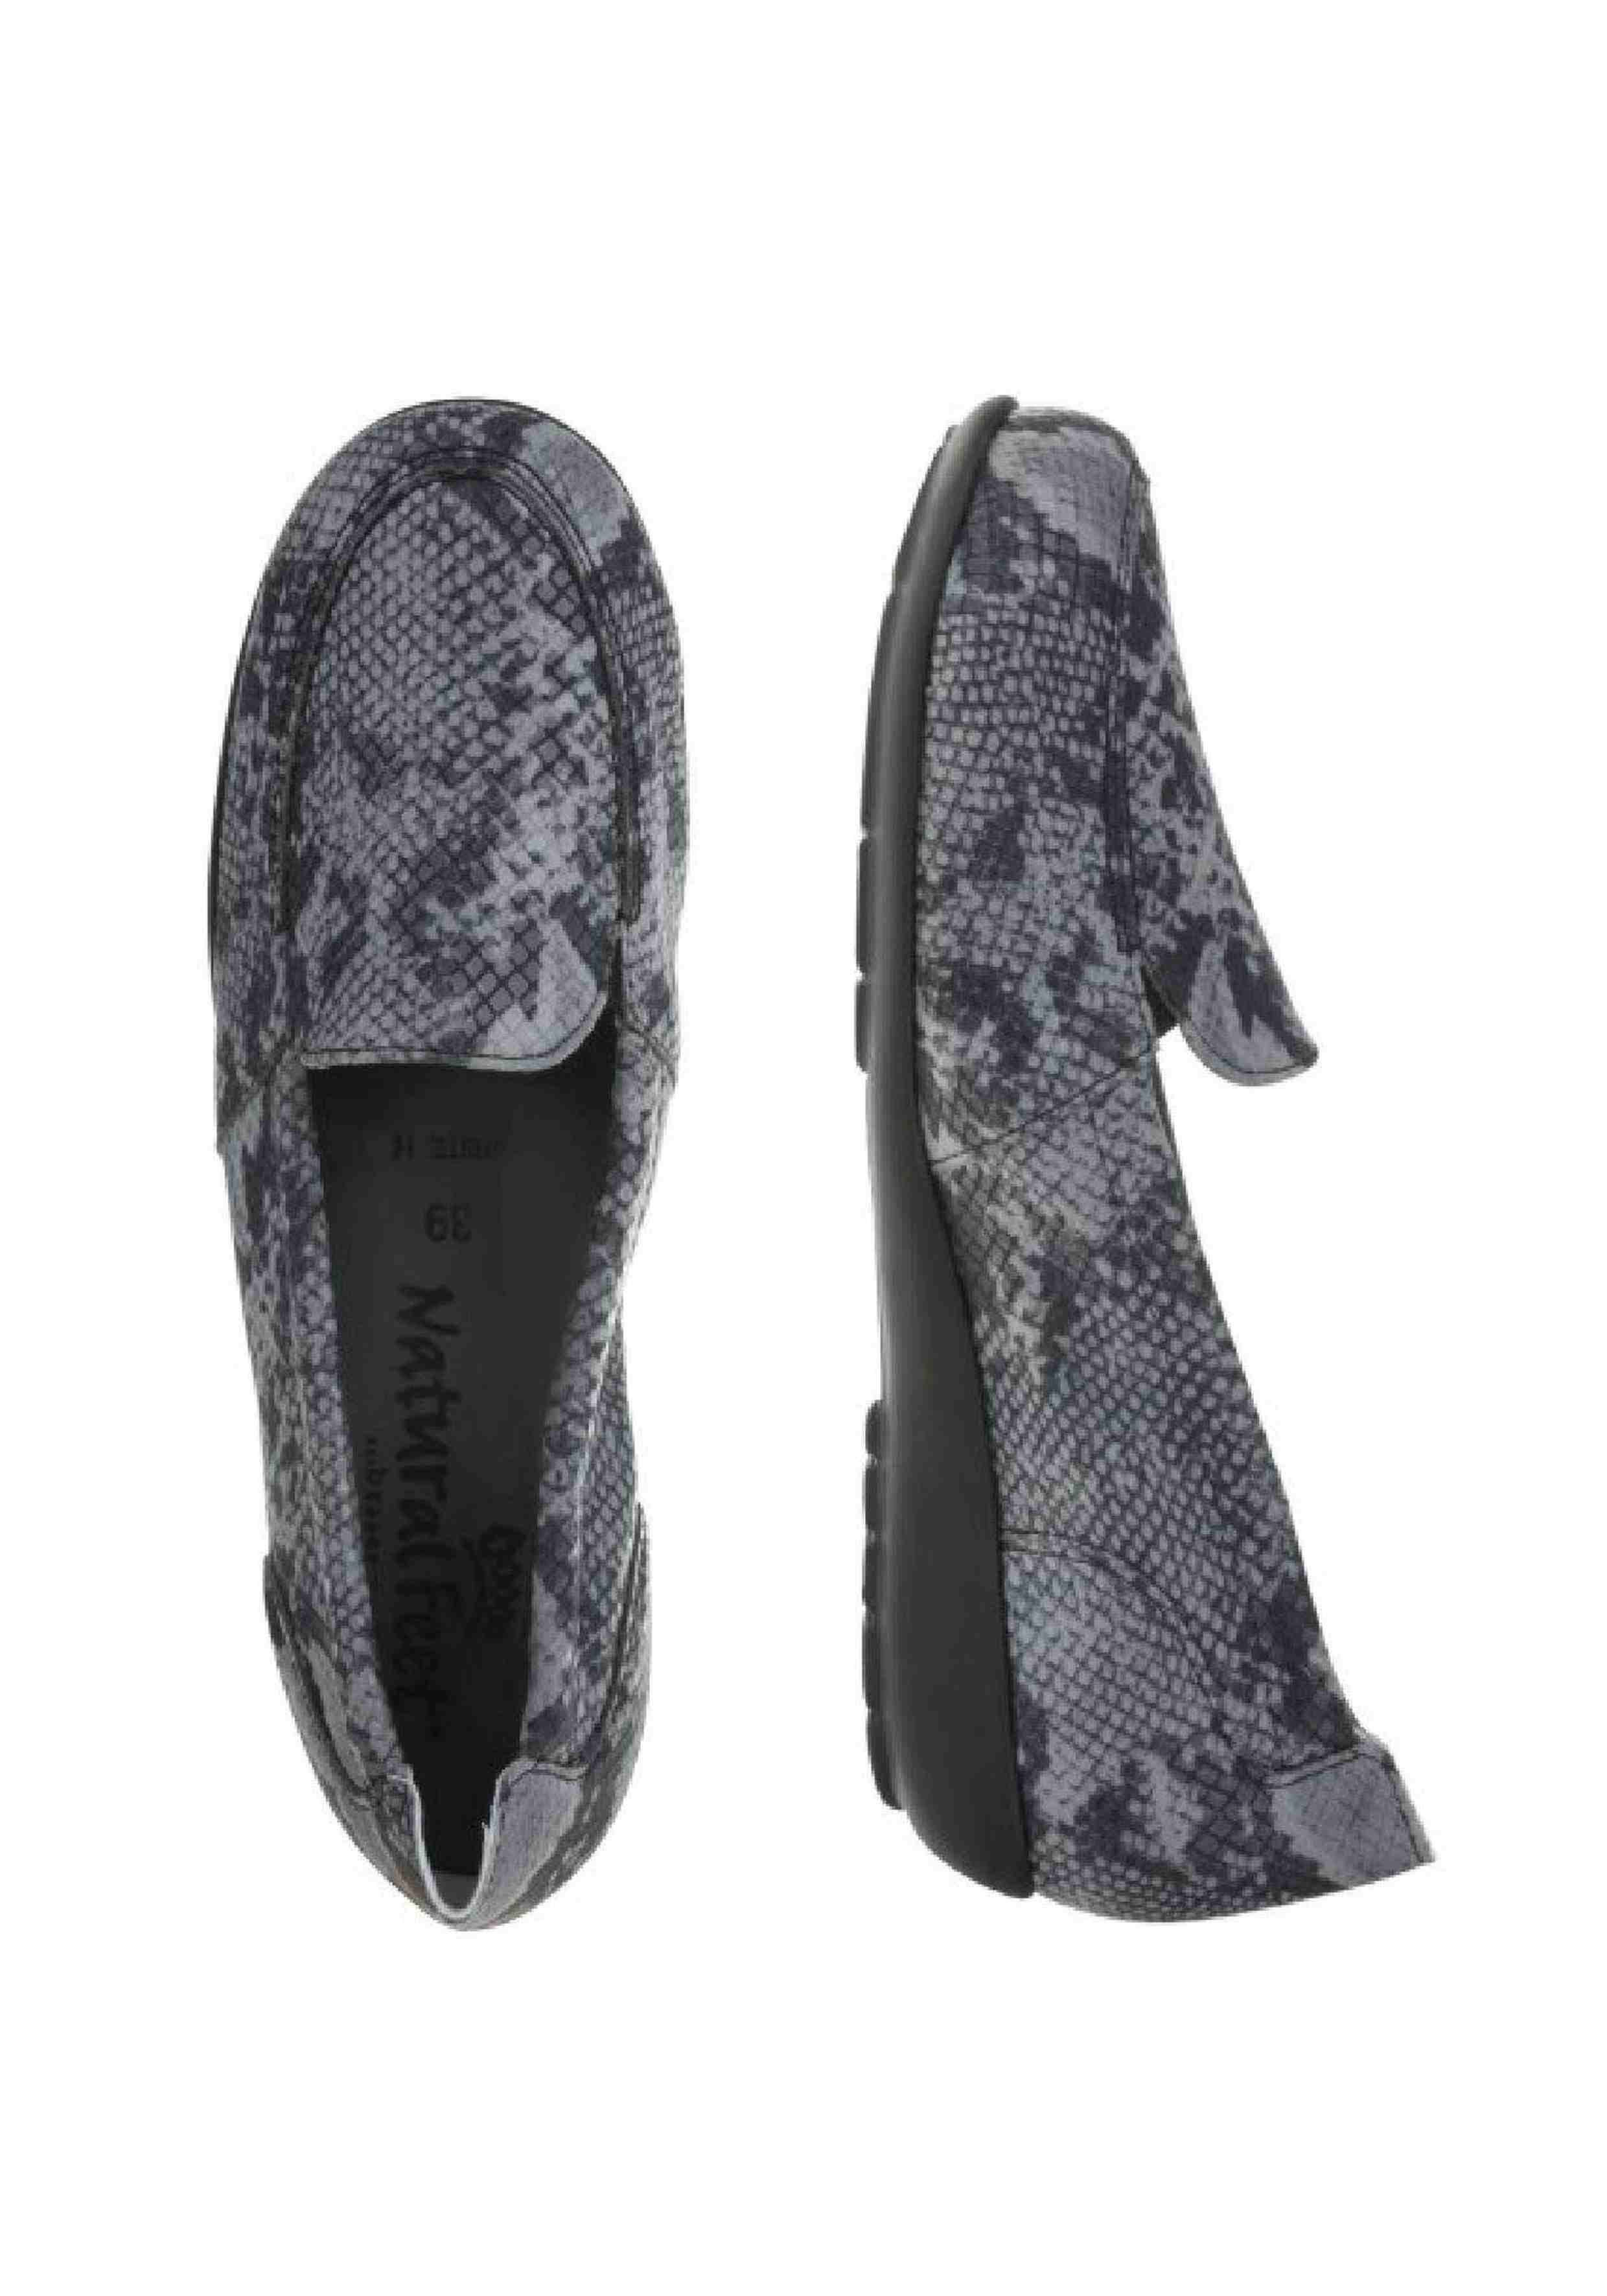 Natural Feet Matilda Slipper Design in schwarz tollem